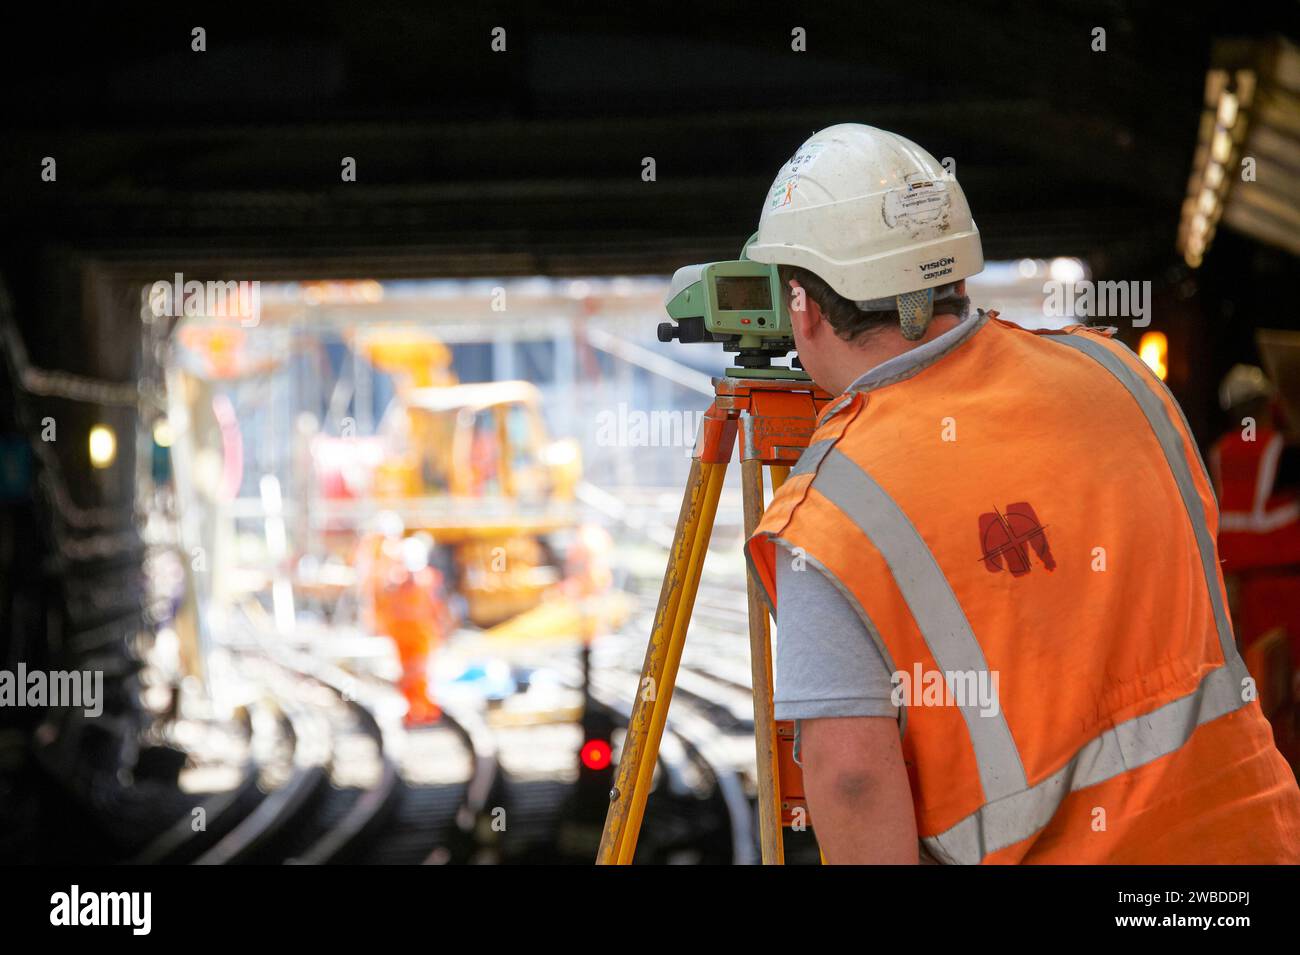 Bauindustrie am Arbeitsplatz, während des Wiederaufbaus und der Renovierung der Farringdon Station, London Underground, Großbritannien Stockfoto